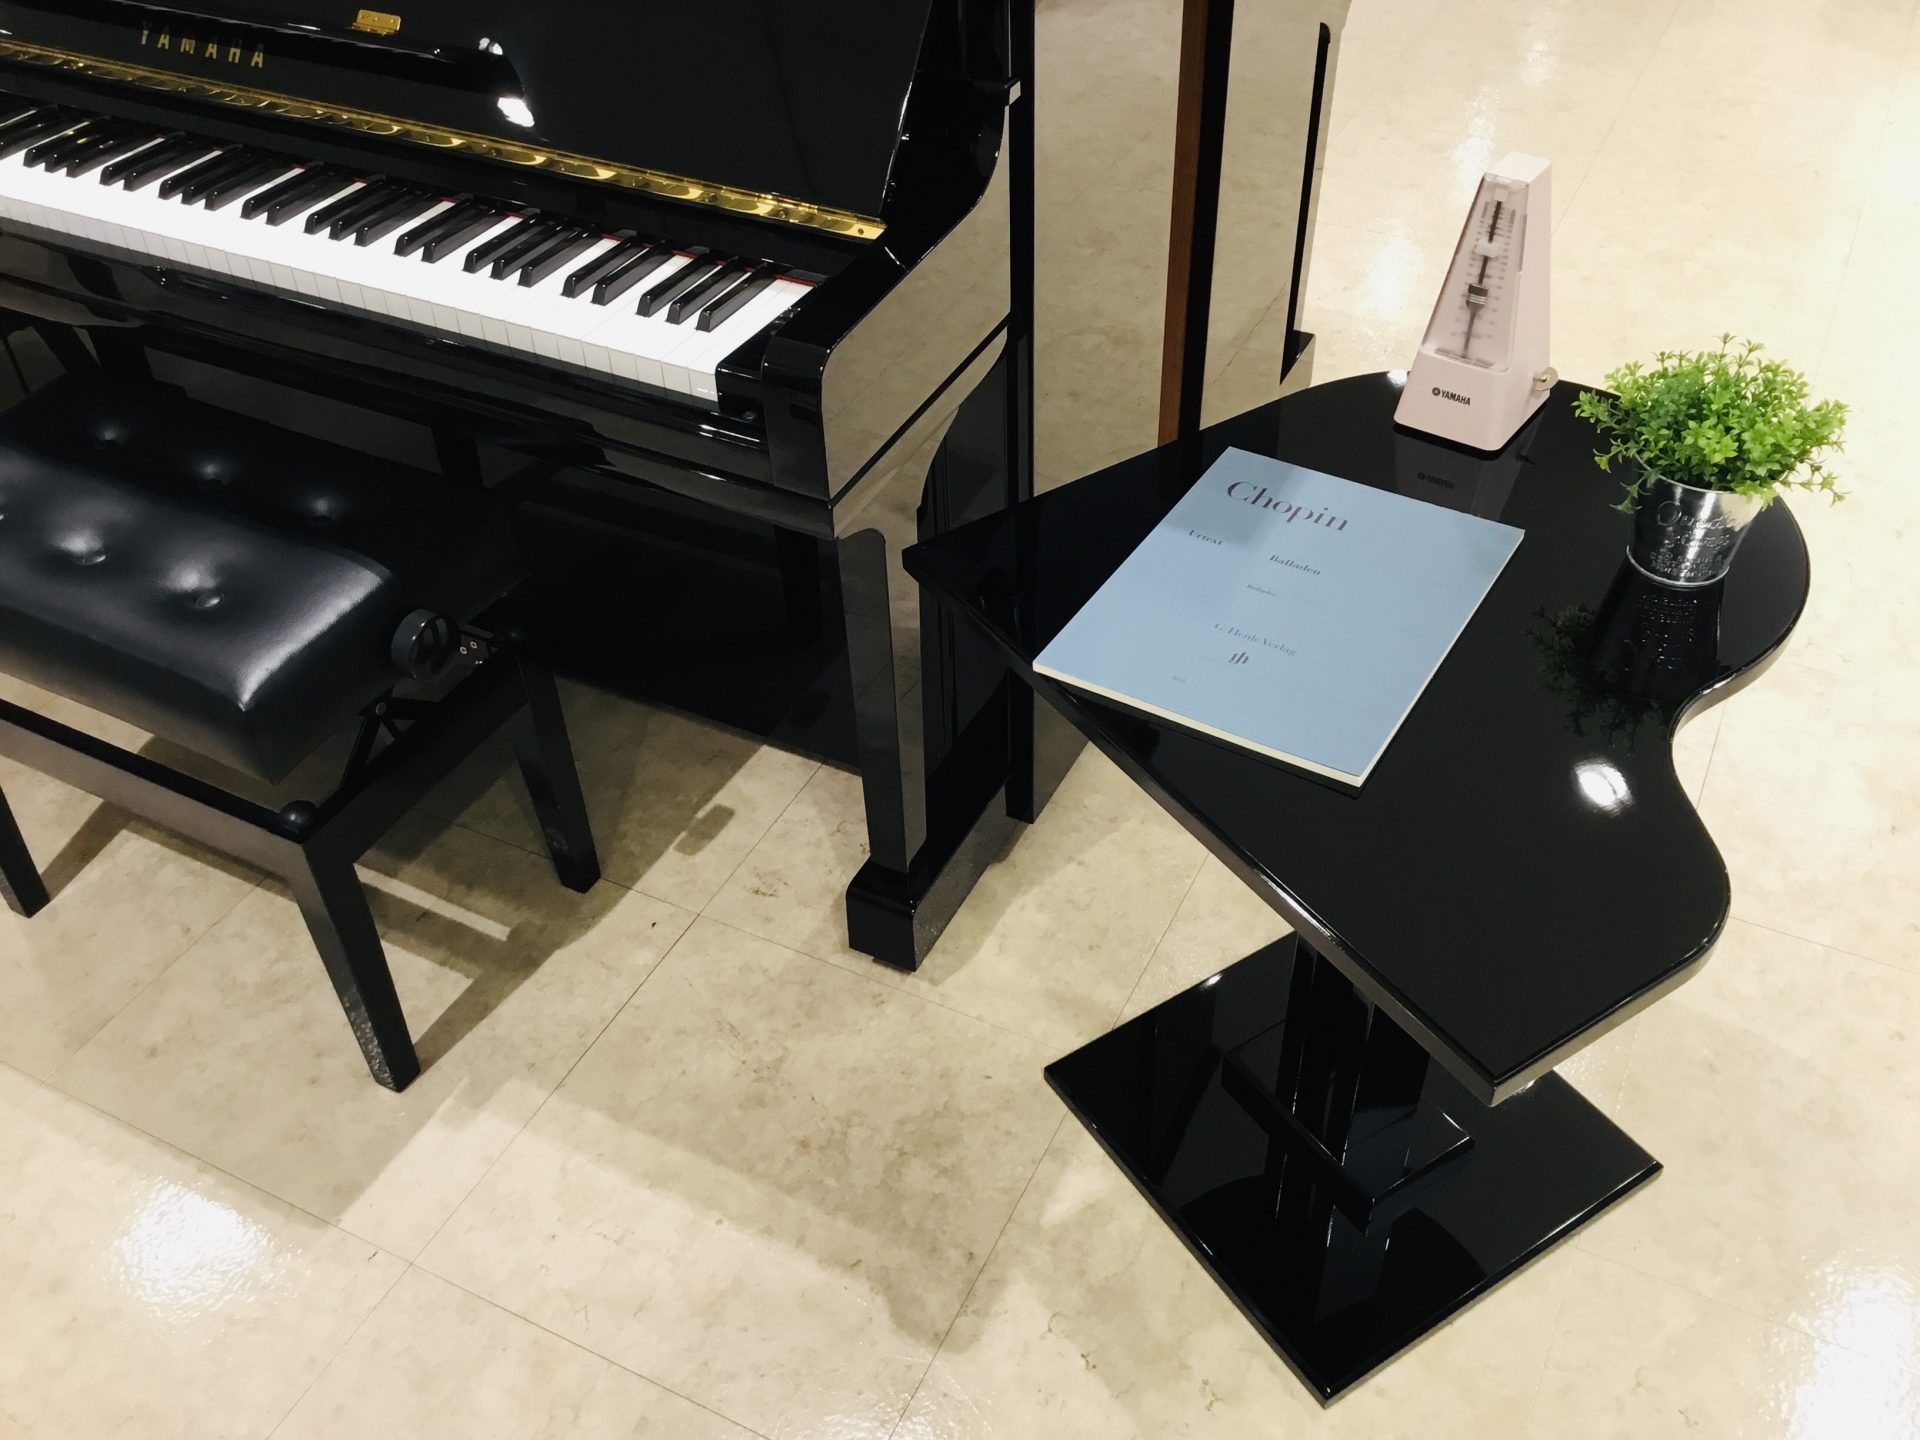 グランドピアノ型サイドテーブル発売 展示ございます 島村楽器 浦和パルコ店